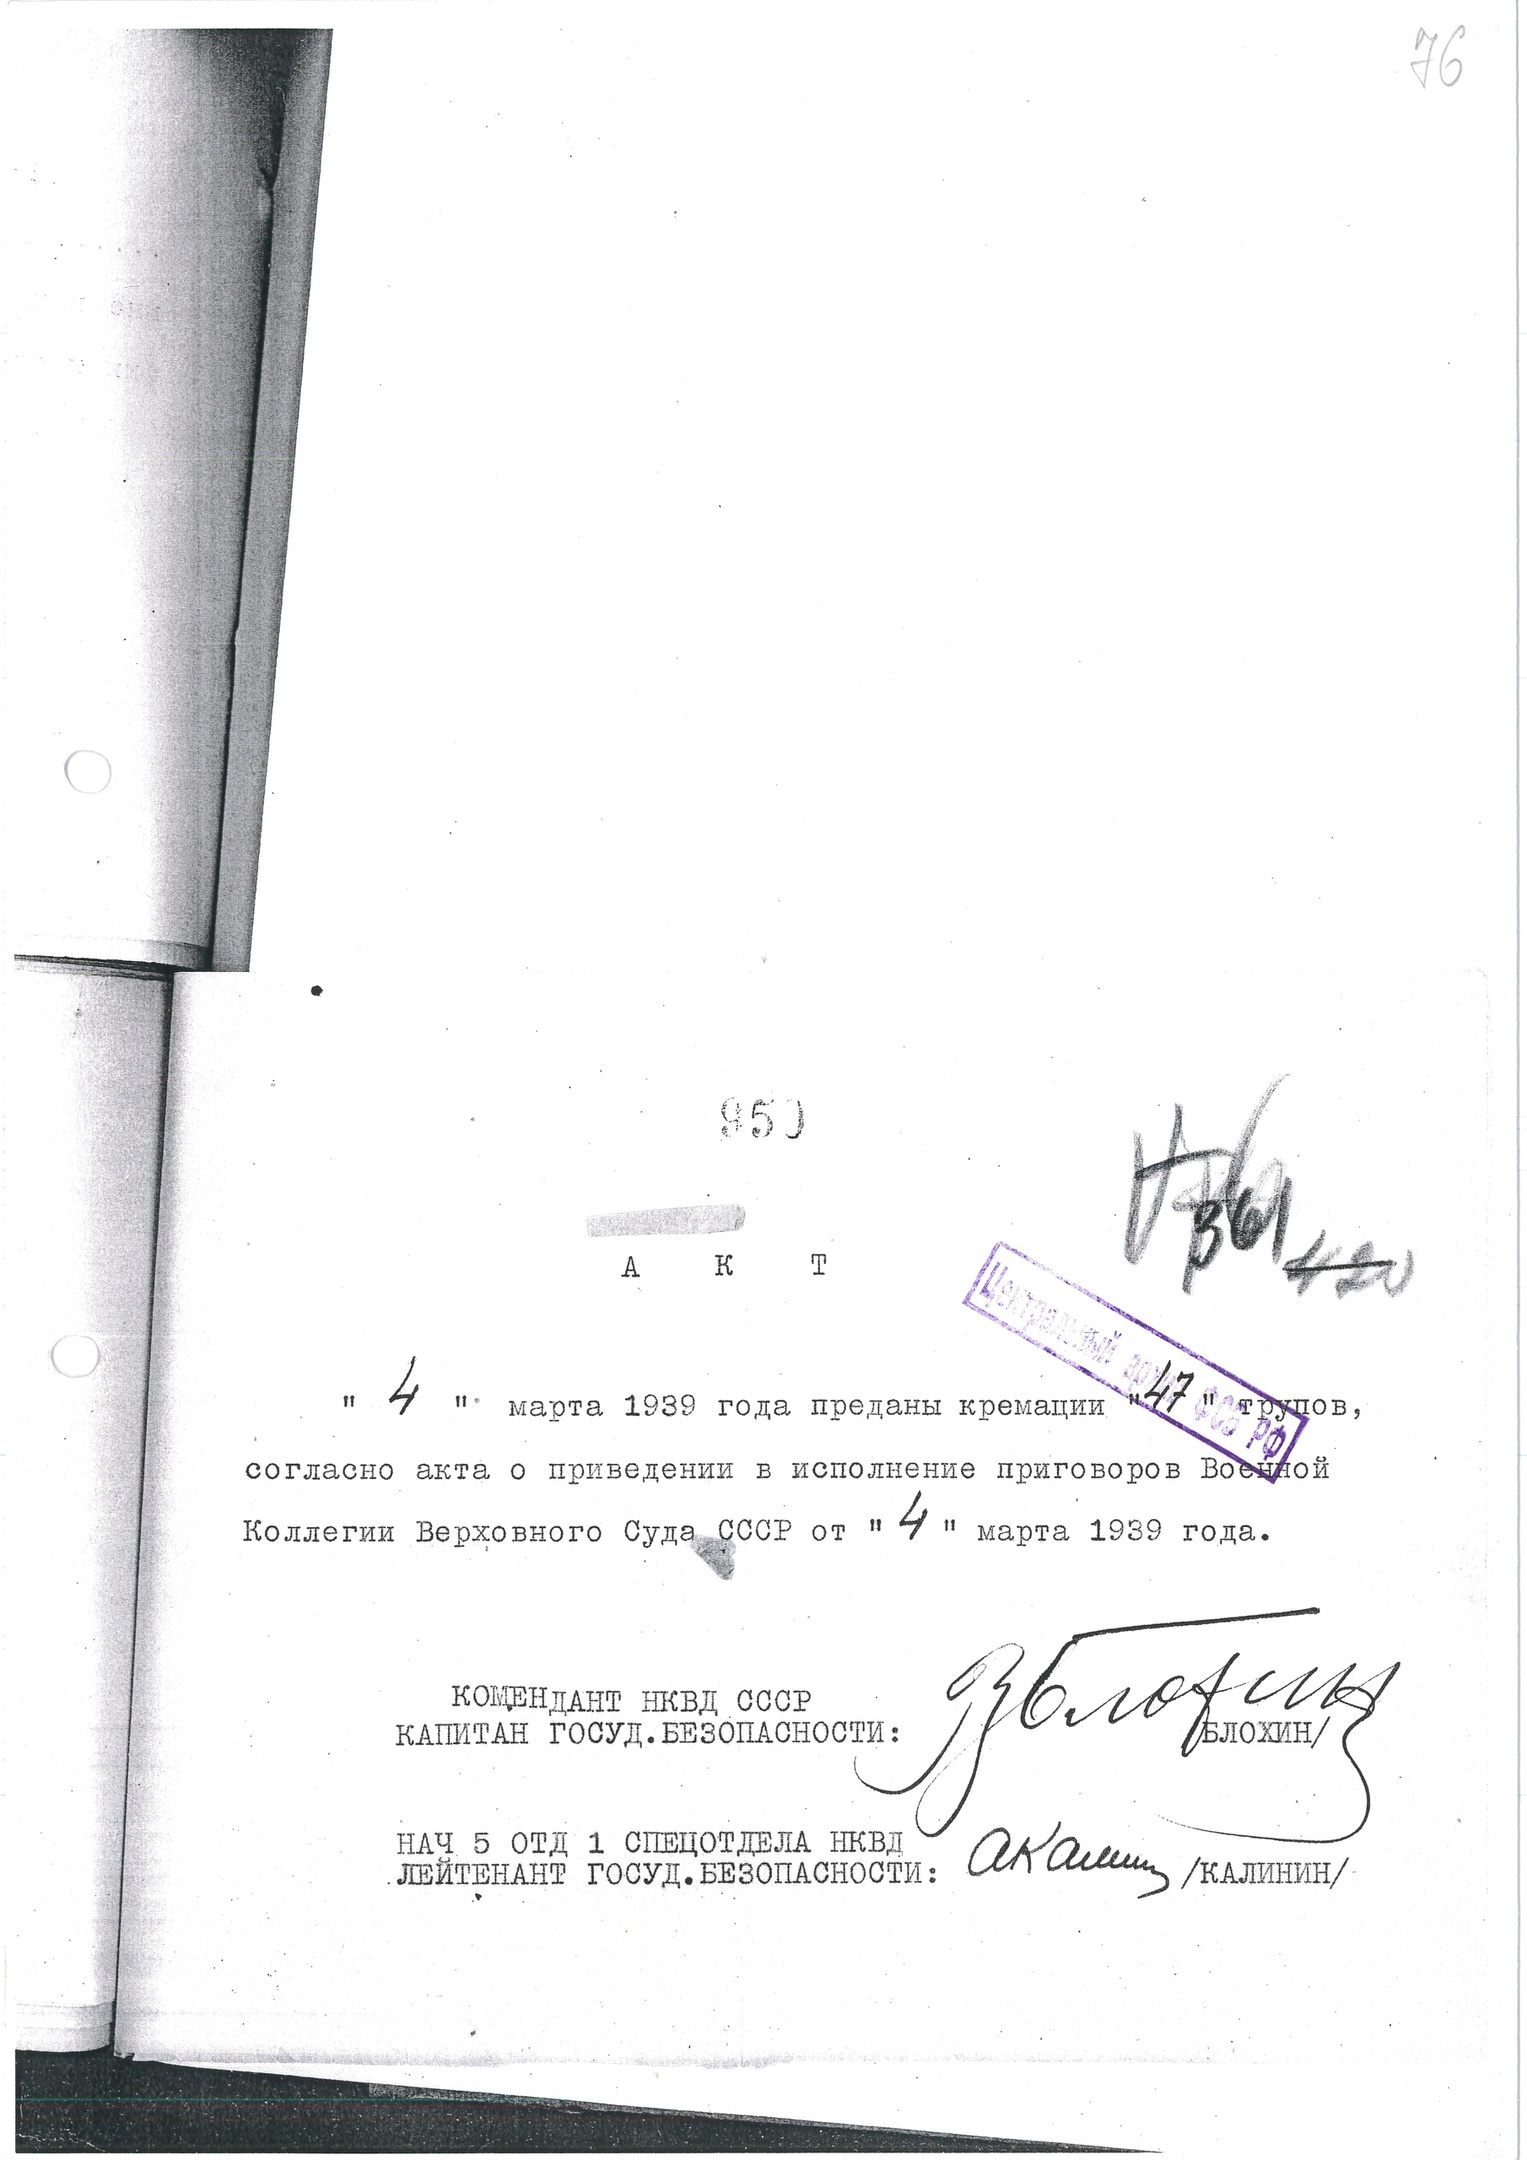 Акт о кремации расстрелянных 4.3.1939 г. (подписи А. М. Калинина и В. М. Блохина)